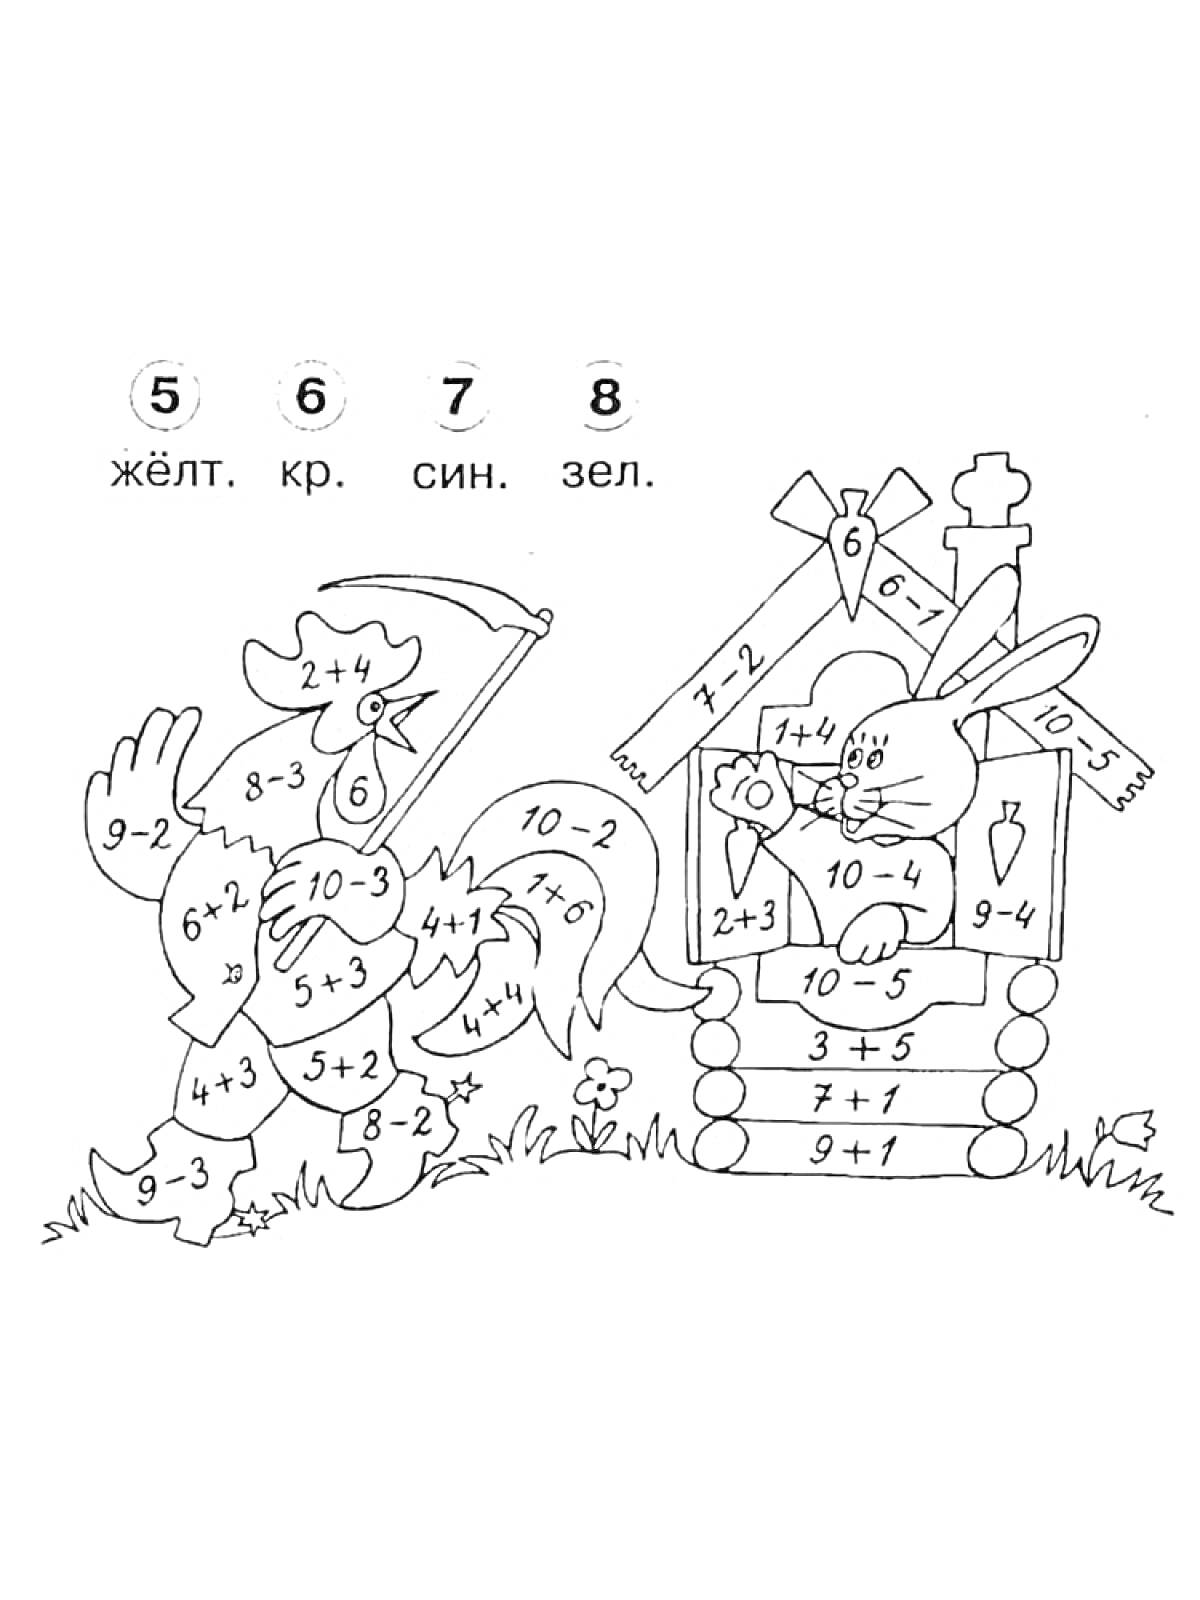 Раскраска Раскраска с задачами на сложение и вычитание: петух и заяц перед домиком